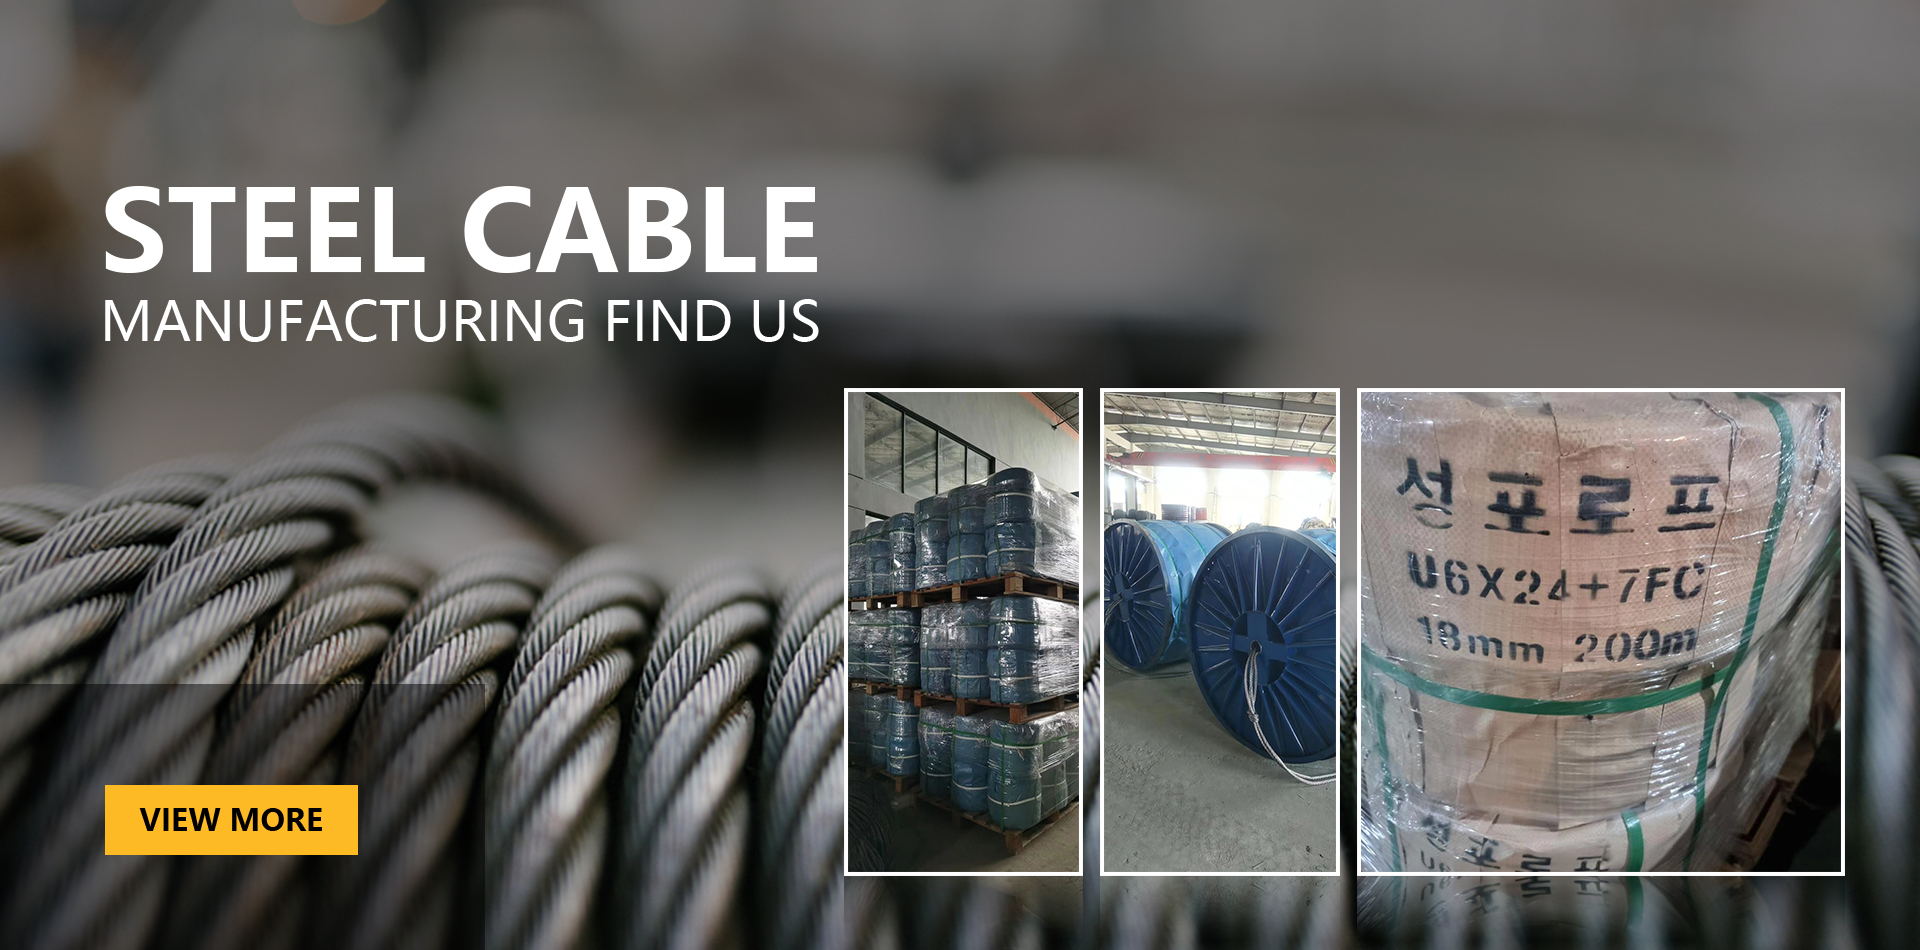 Yangzhou Jieerte Steel Cable Co., Ltd